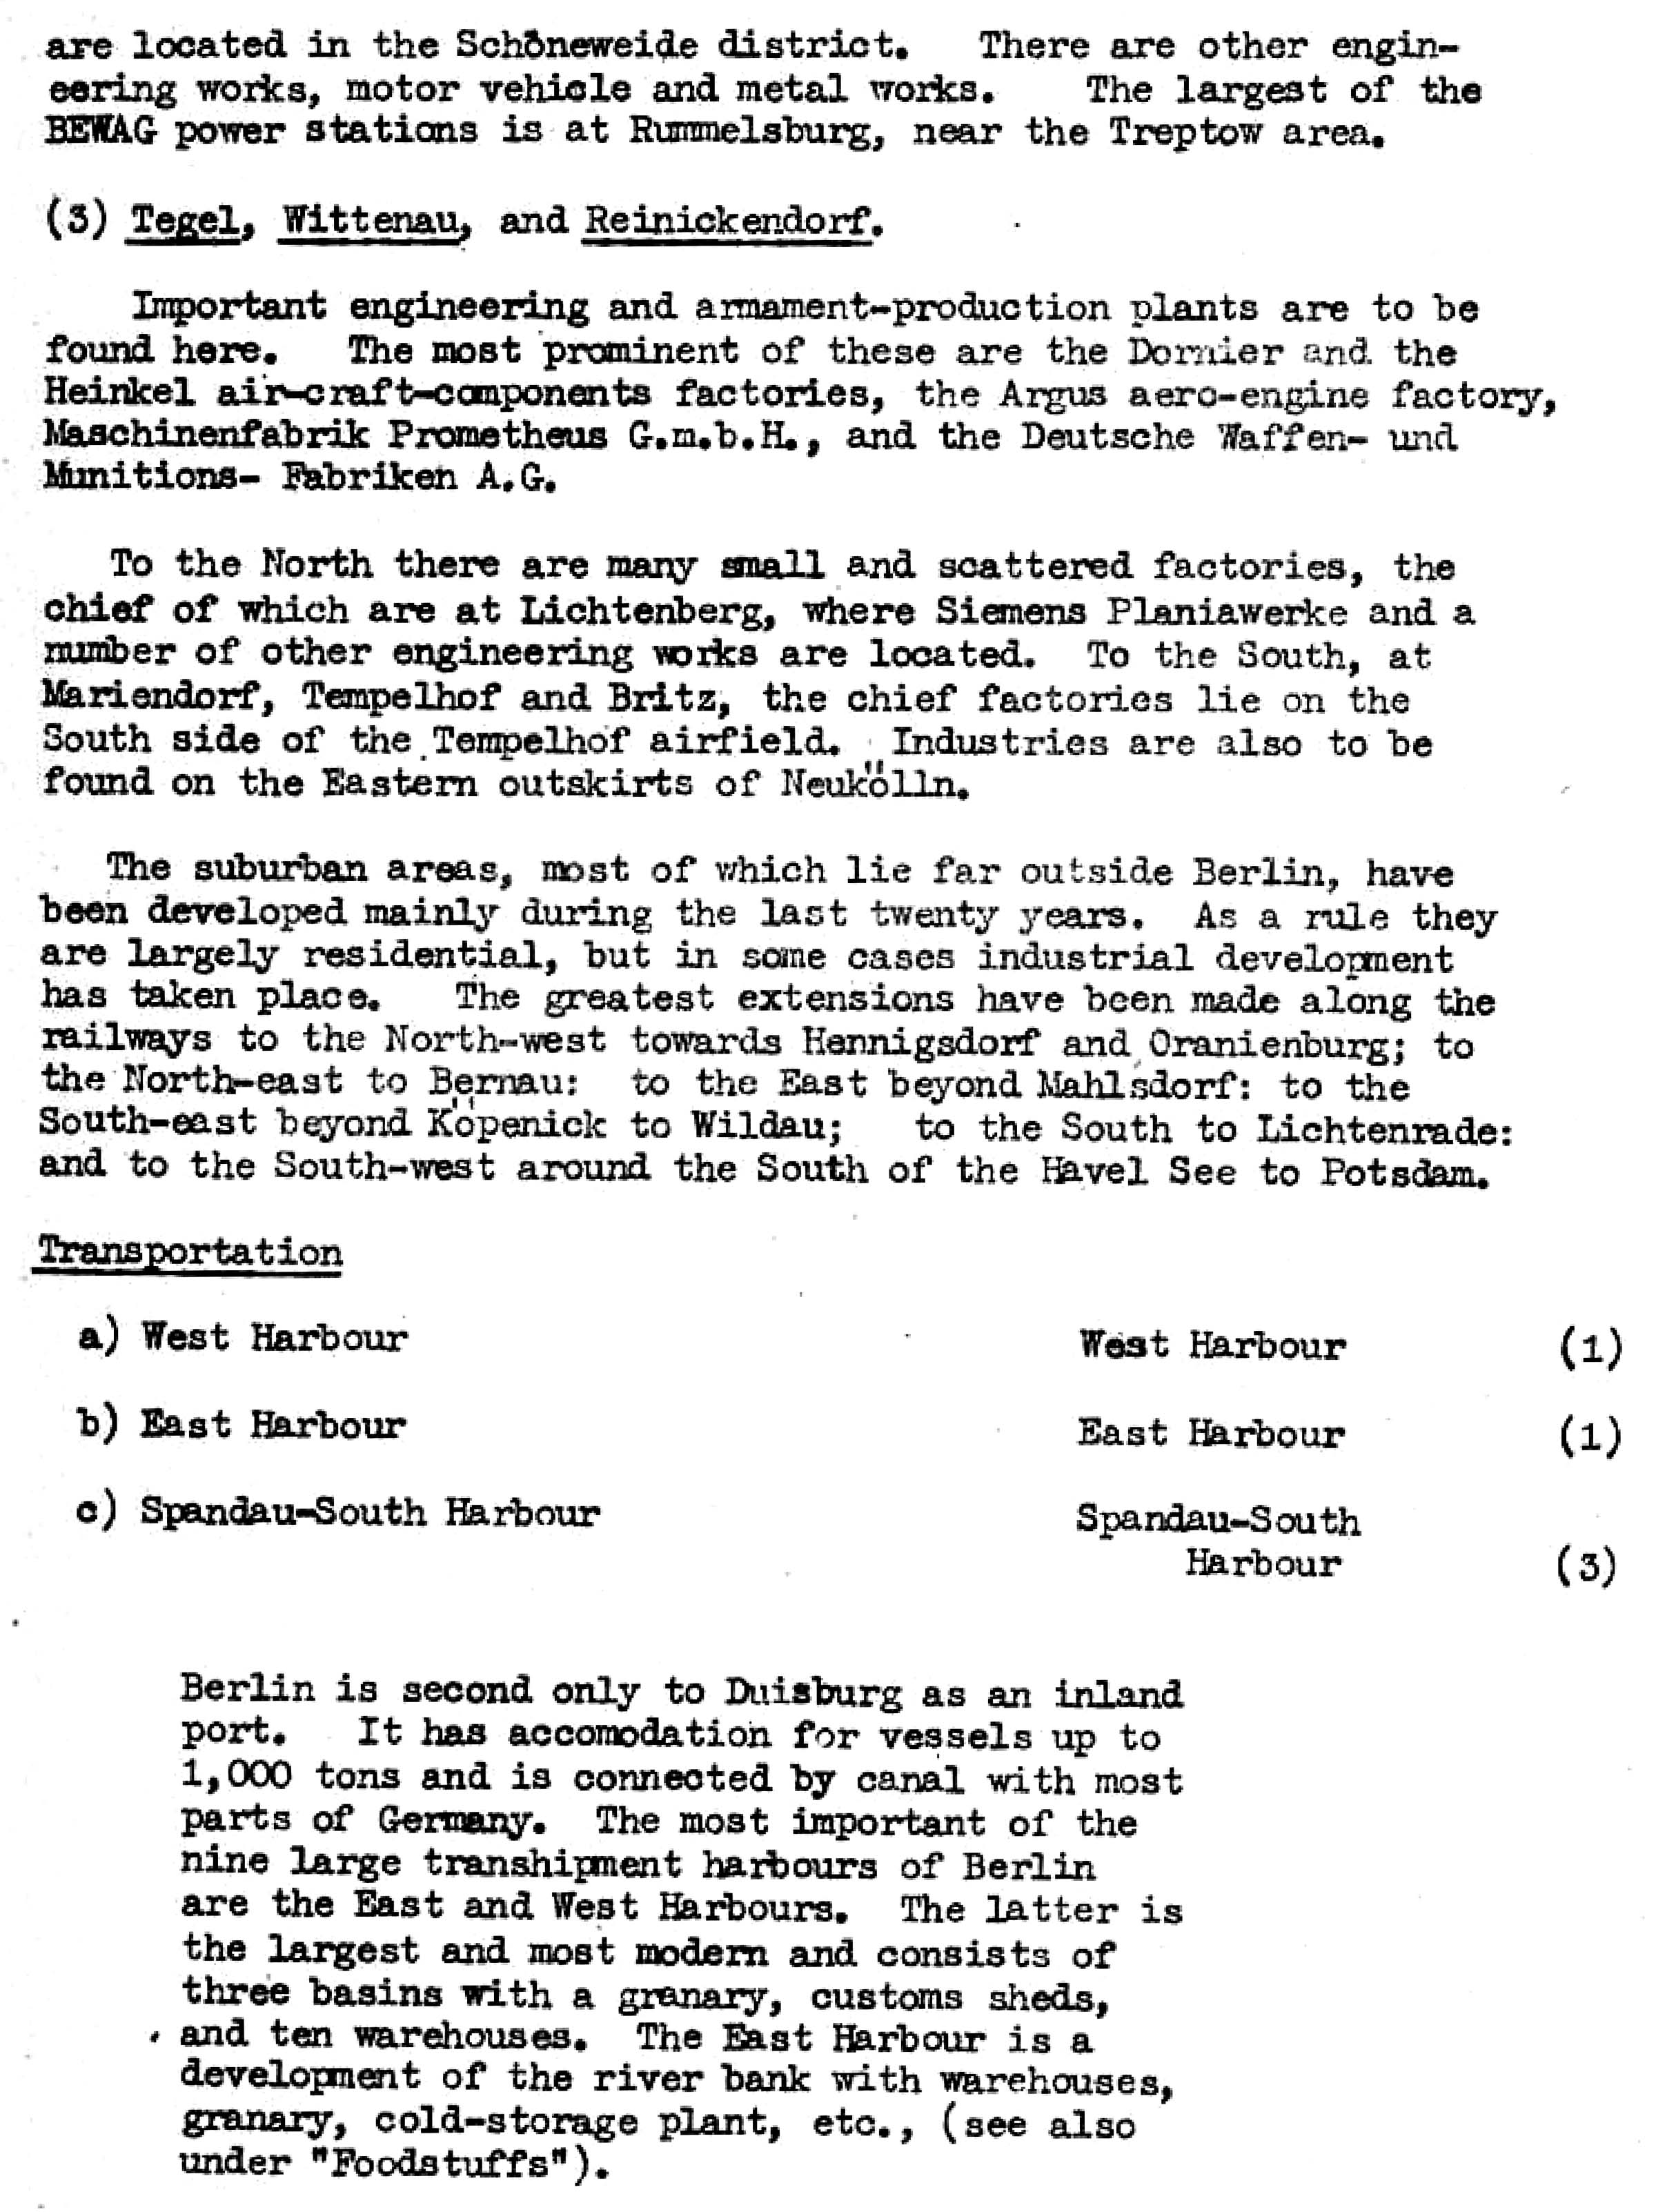 Die Ziele der alliierten Luftangriffe in Berlin im Zeiten Weltkrieg im Bomber's Baedeker - Originaldokument Seite 33